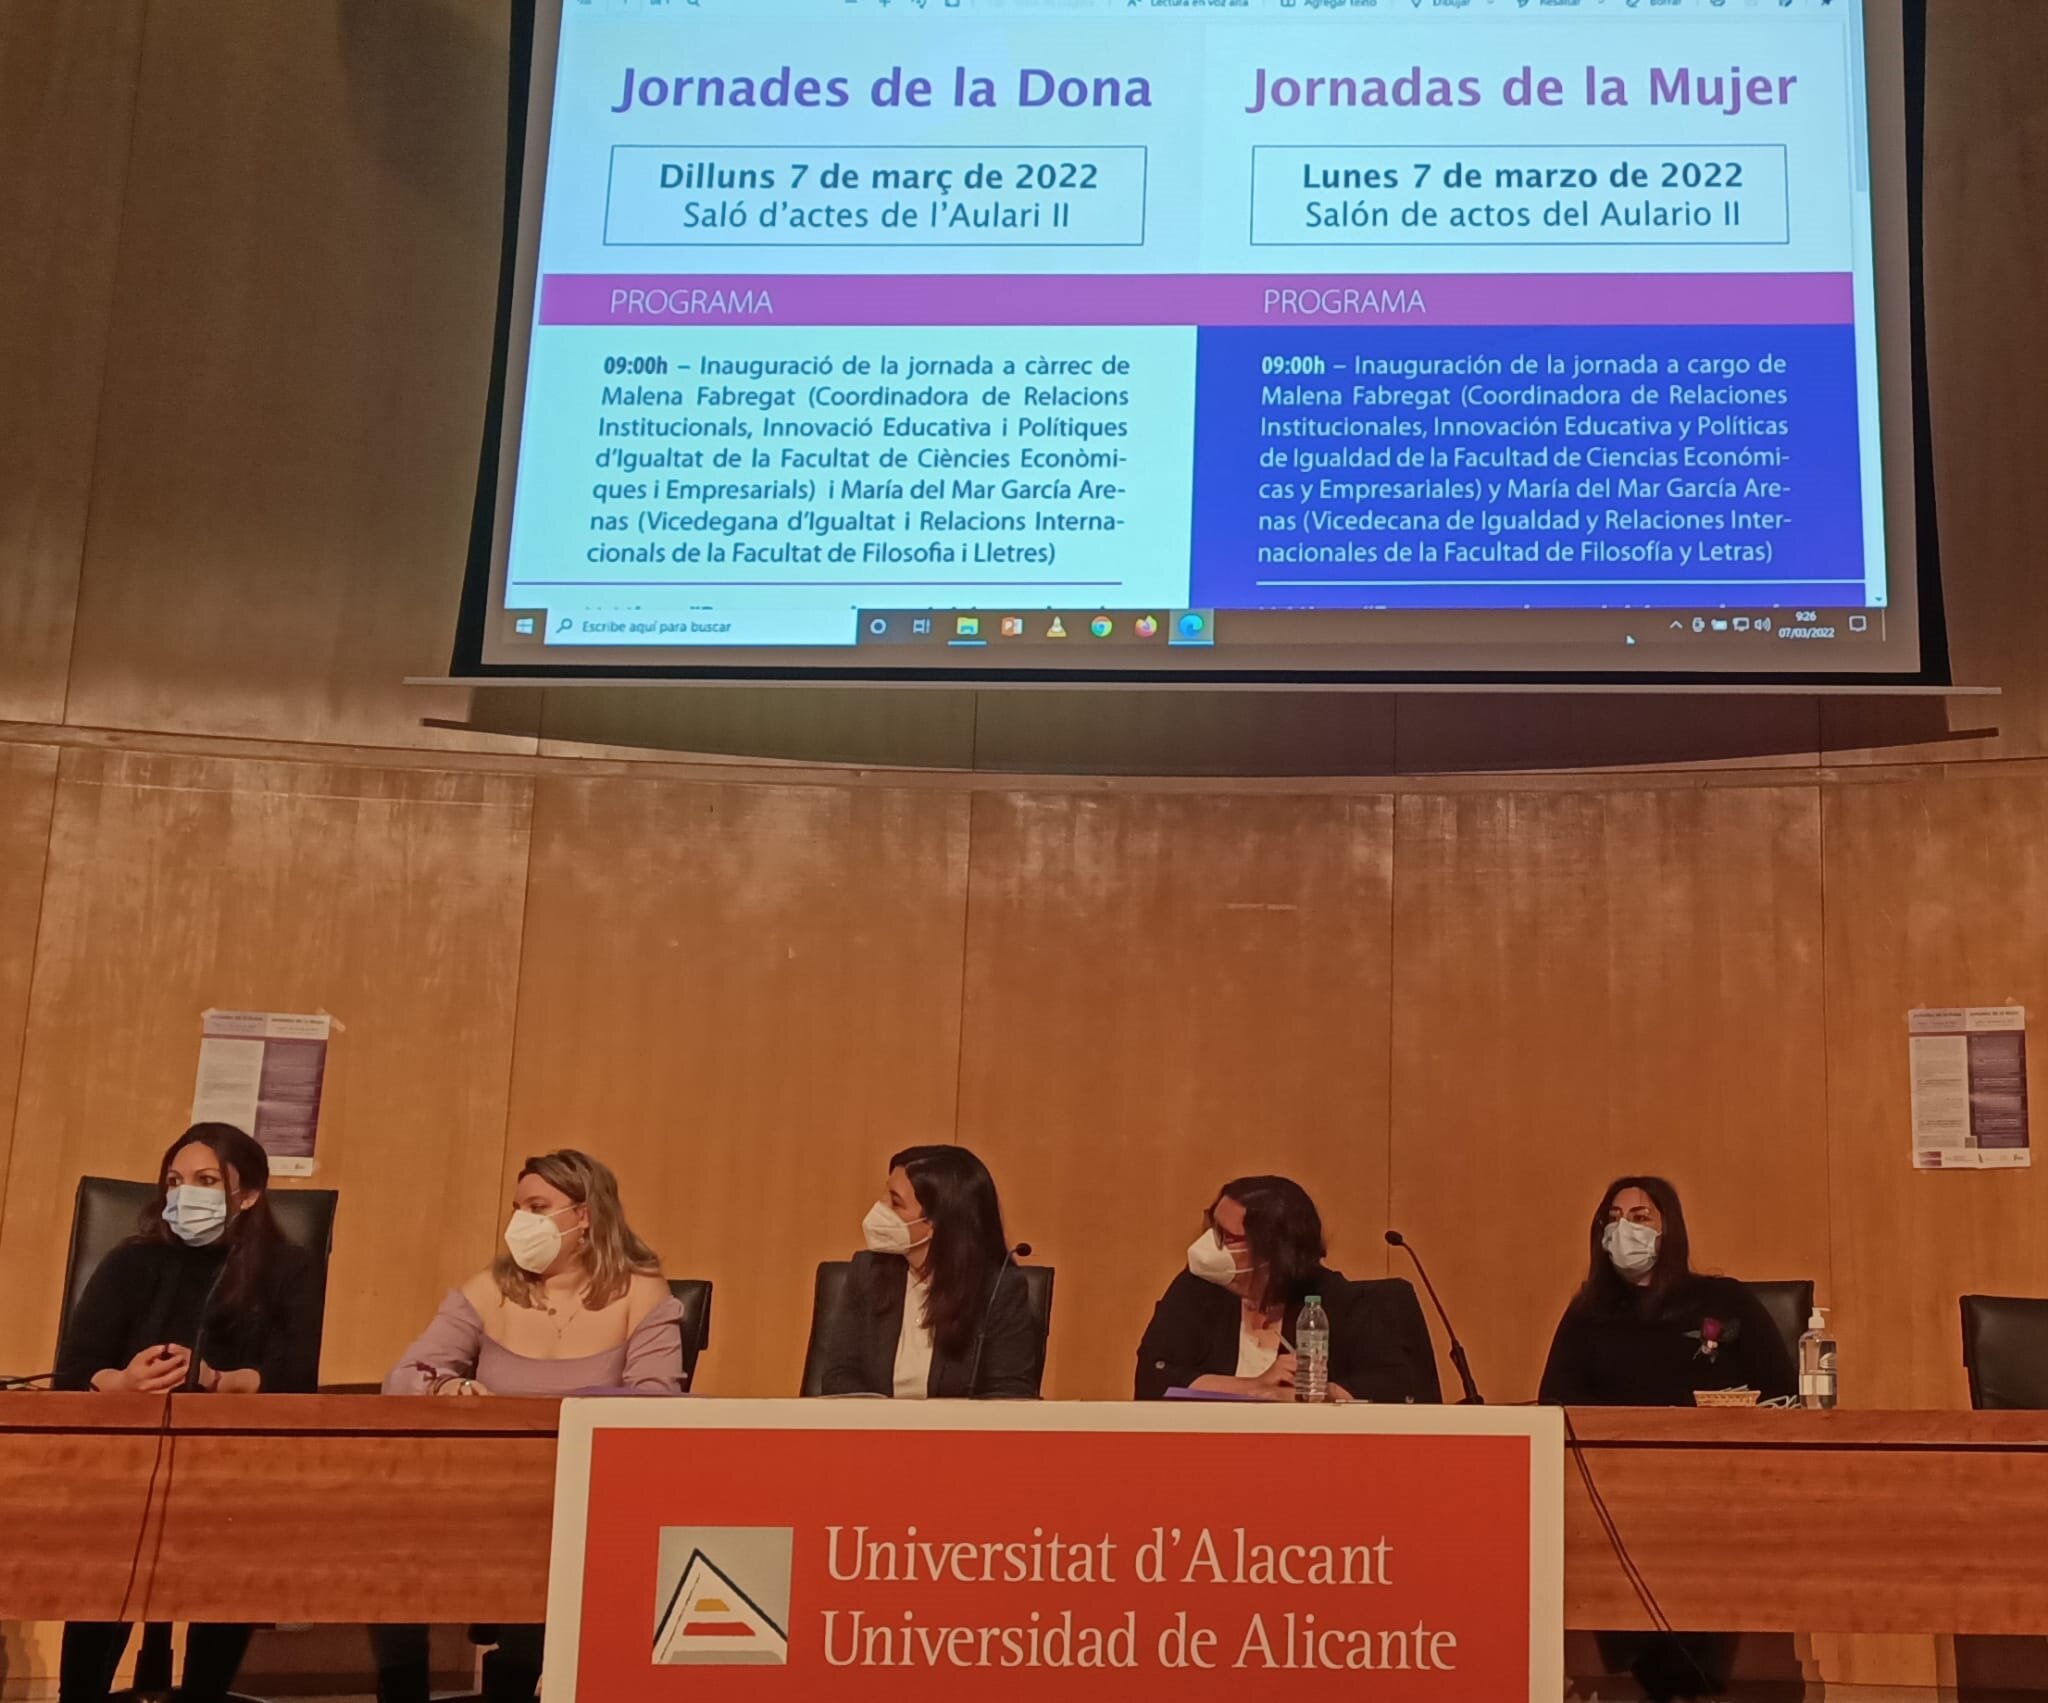  Jornadas de la Mujer en la Universidad de Alicante